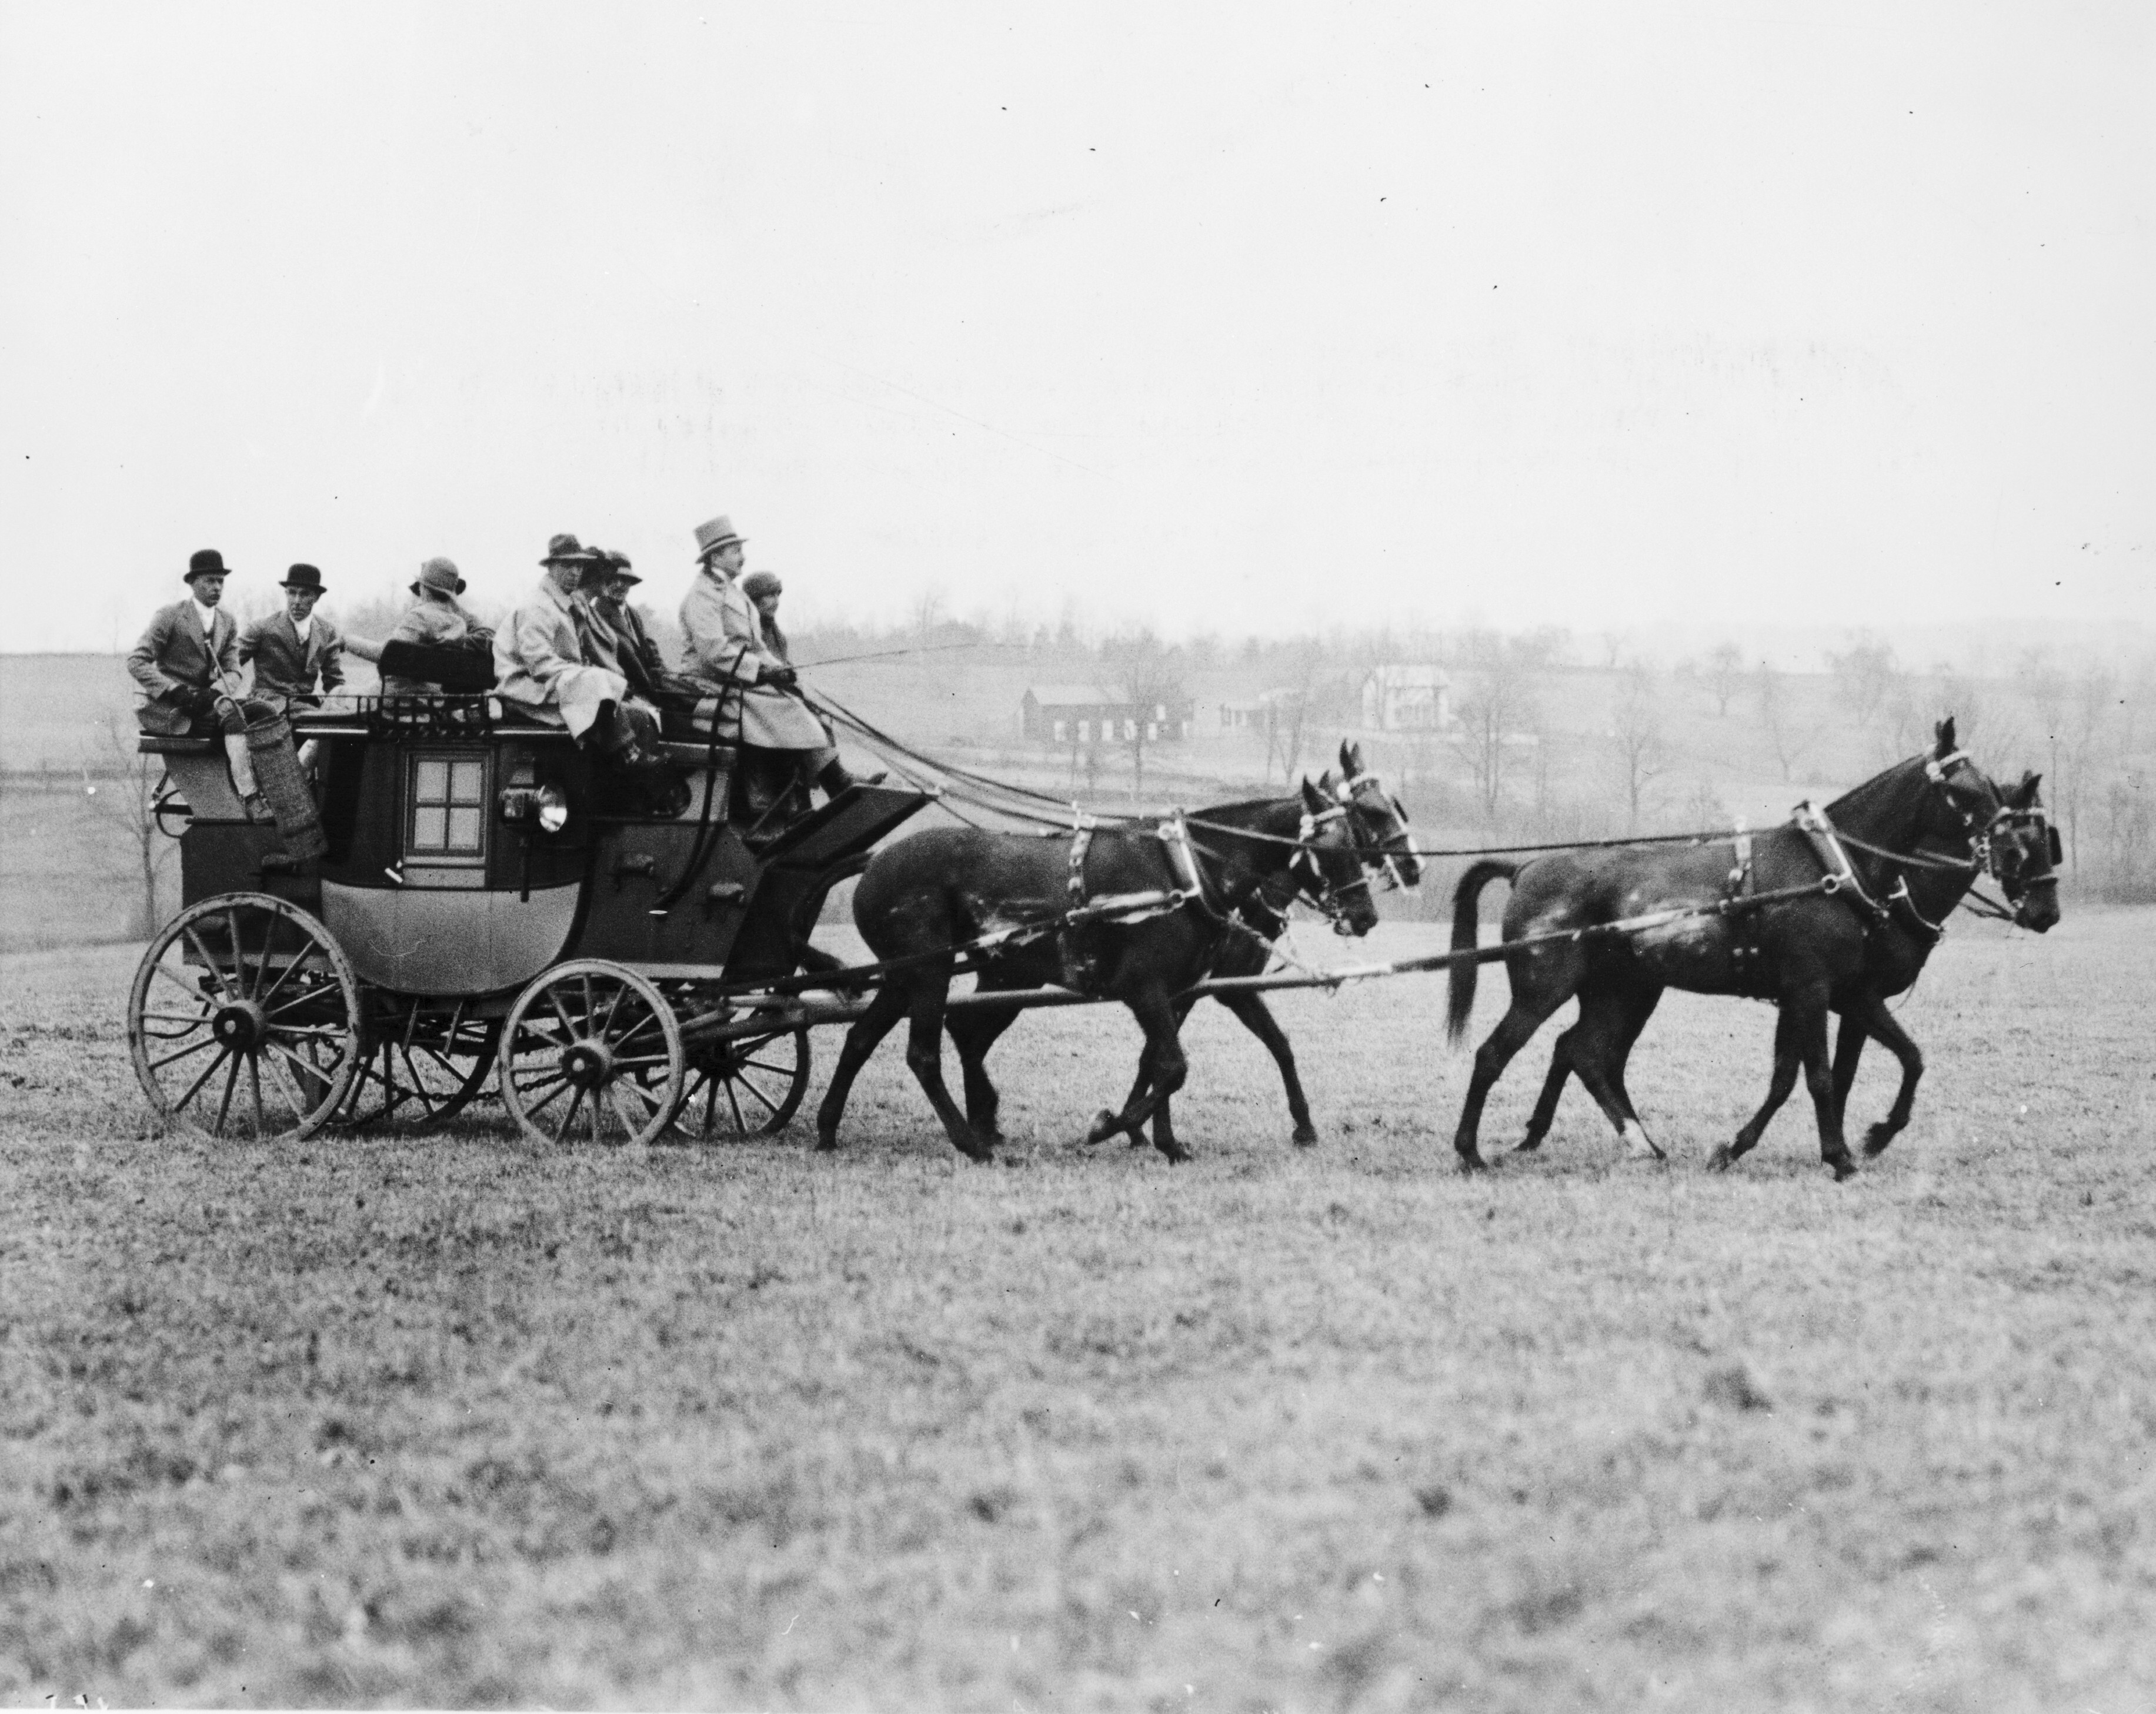 Девять человек в дилижансе, запряжённом четырьмя лошадьми. Вирджиния, 1926. Фотография из коллекции Национальной фотокомпании